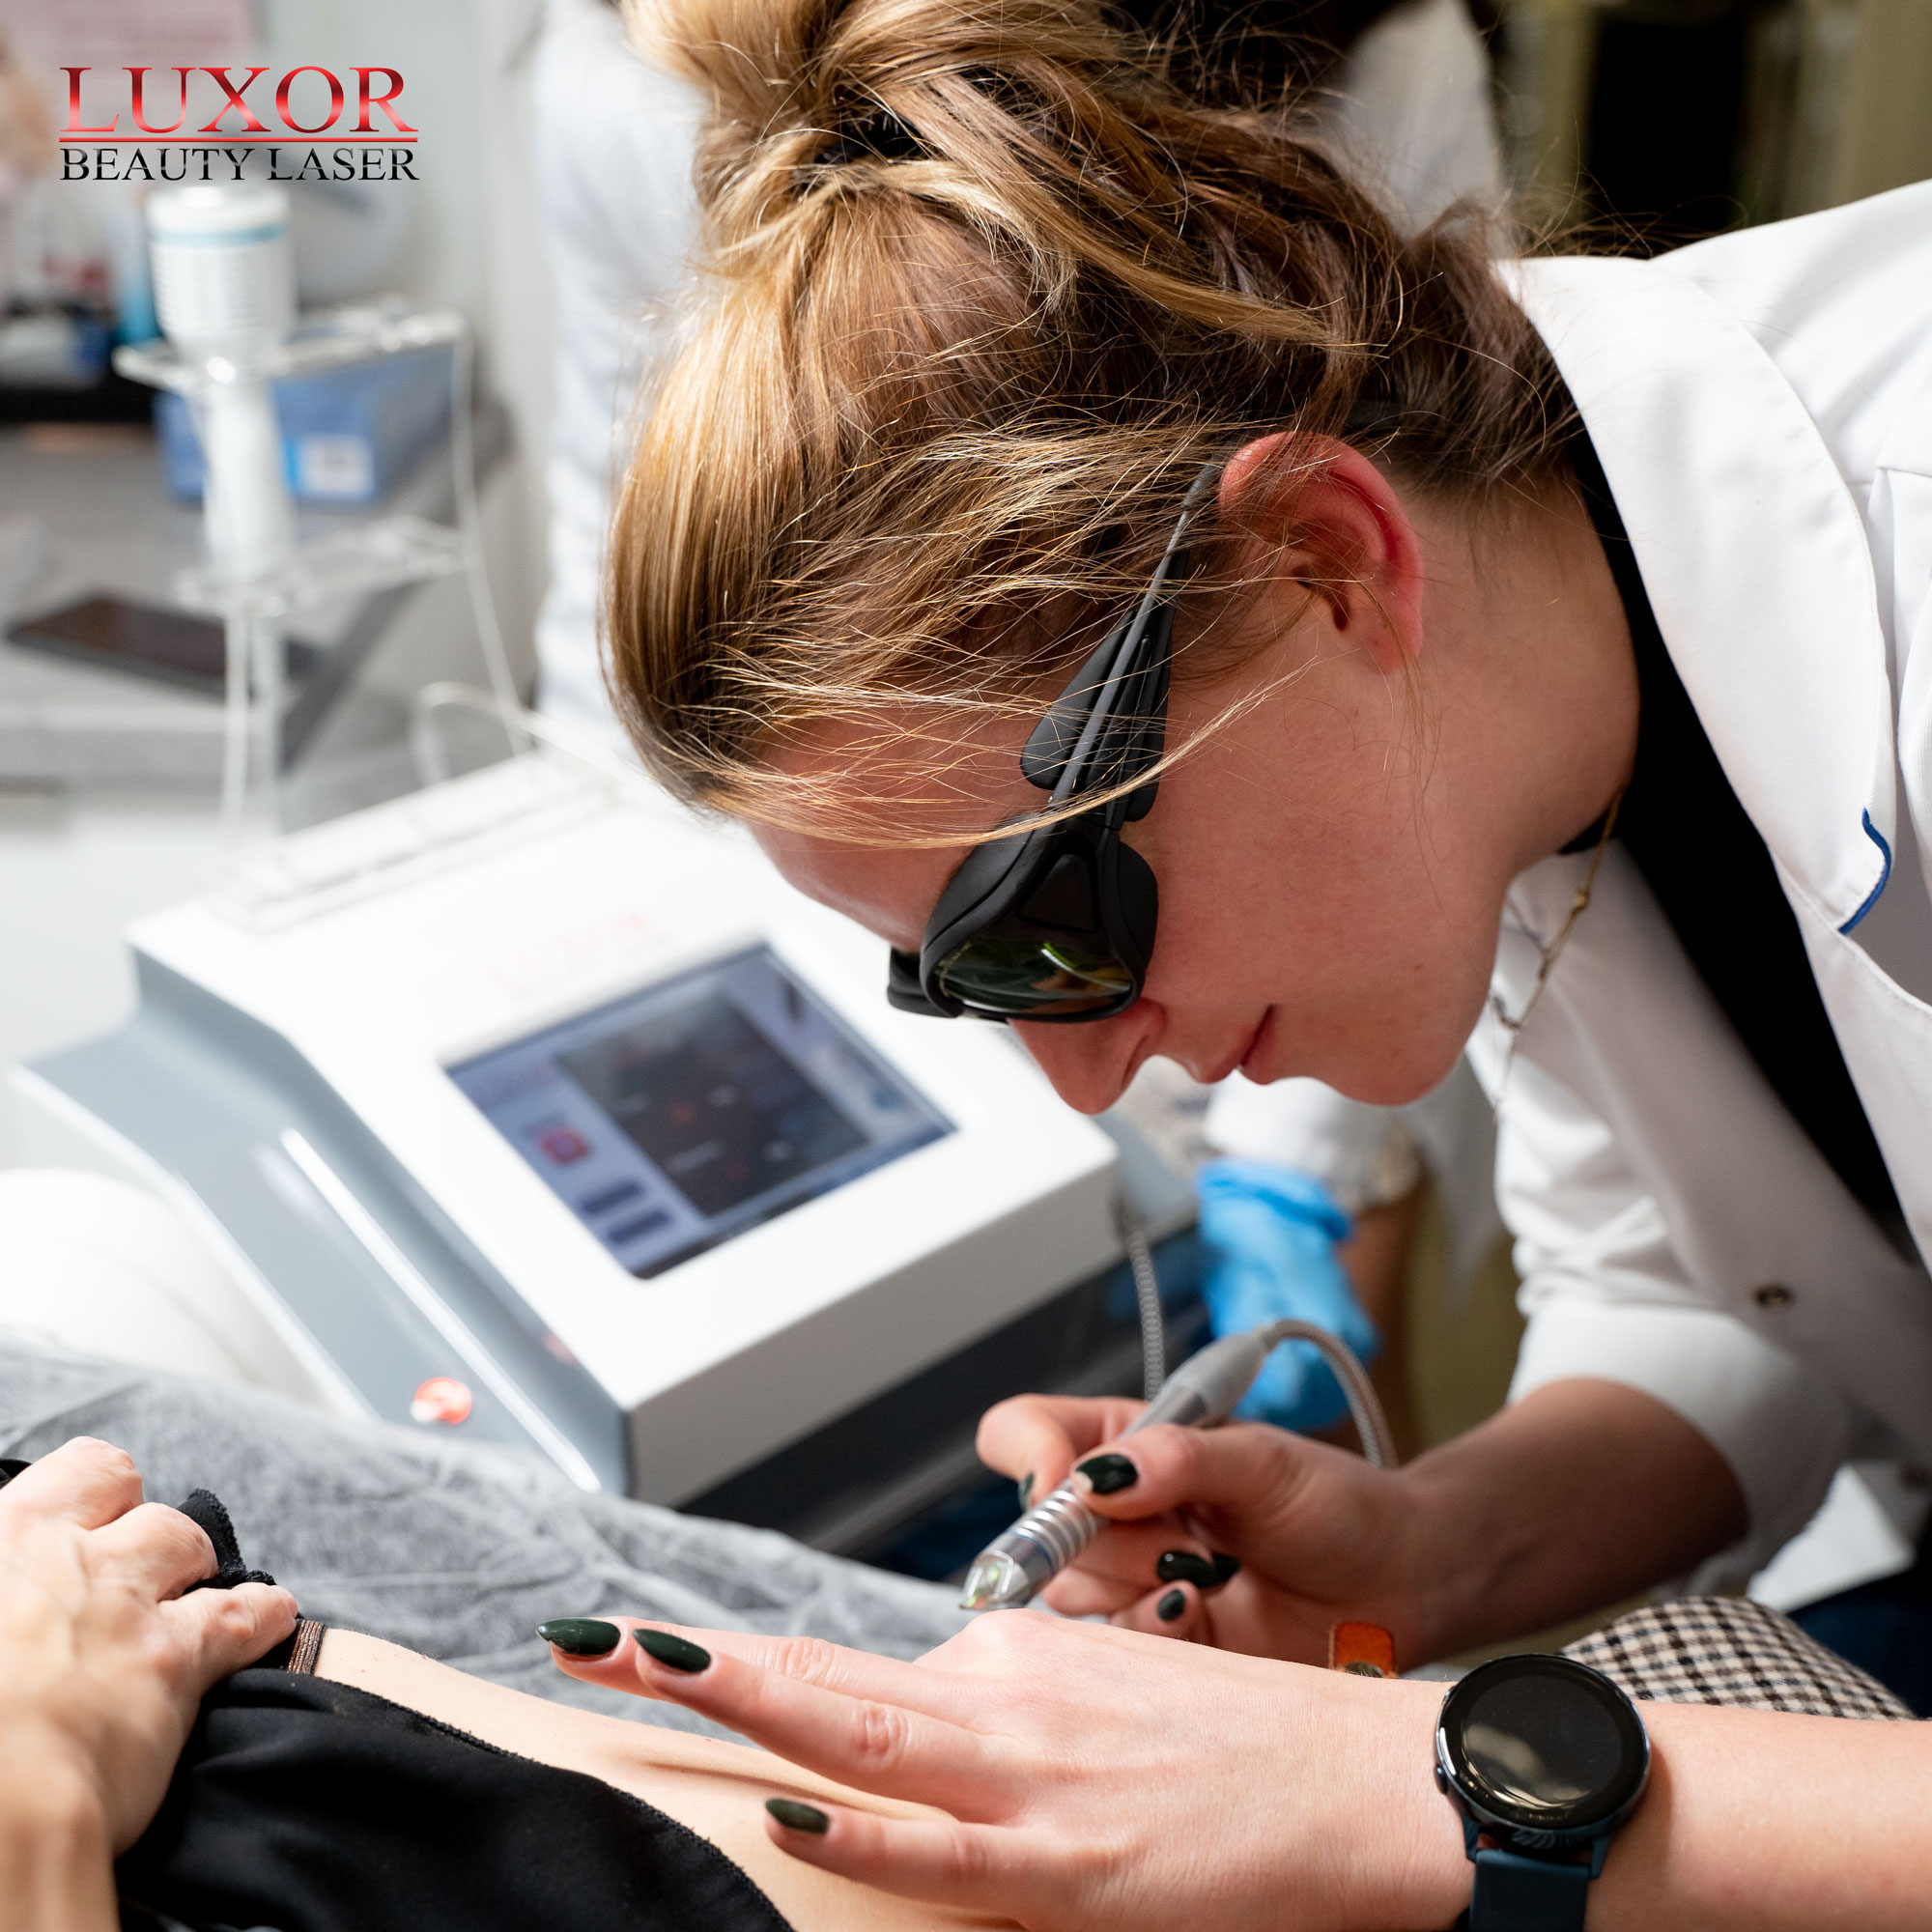 Maszyna Luxor Beauty Laser gwarantuje skuteczne zabiegi, w celu leczenia zmian naczyniowych